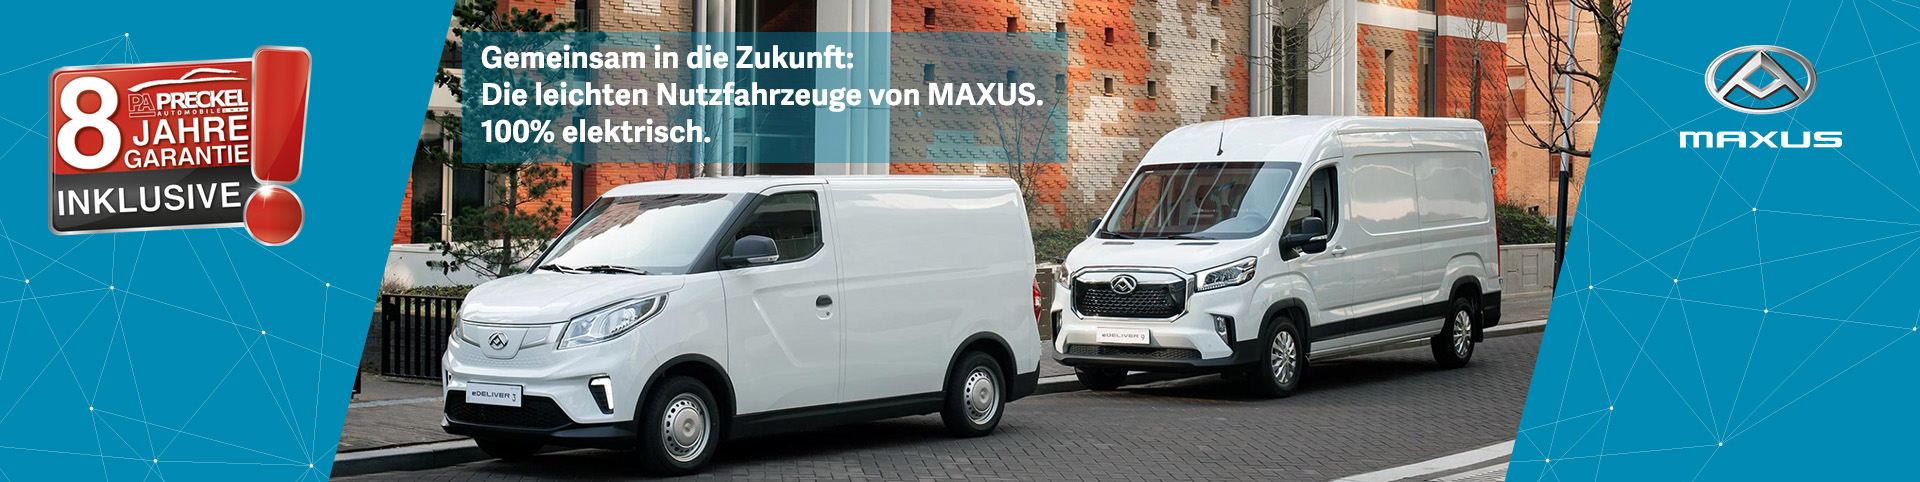 Maxus Nutzfahrzeuge bei Preckel Automobile inklusive 8-Jahre-Garantie